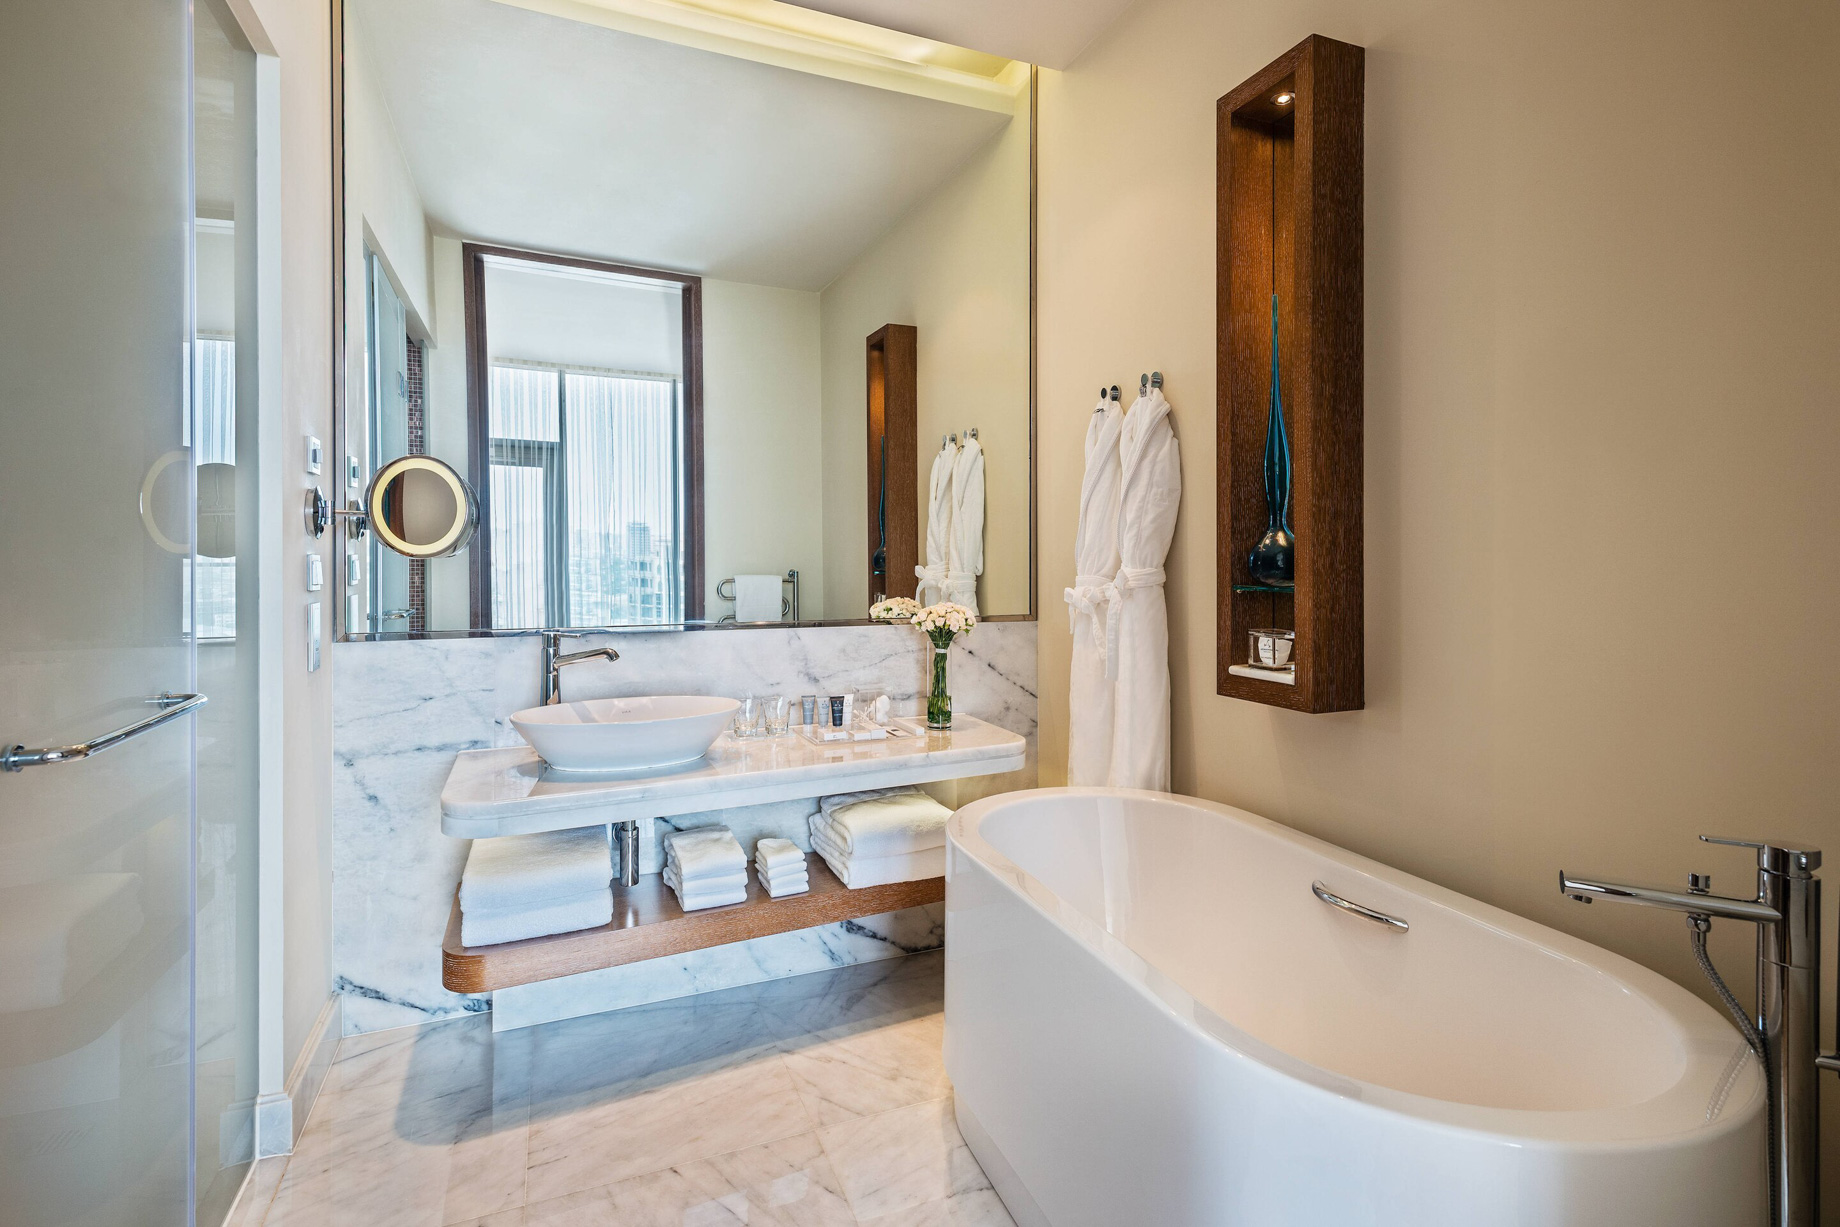 JW Marriott Absheron Baku Hotel – Baku, Azerbaijan – Executive Corner Room Bathroom